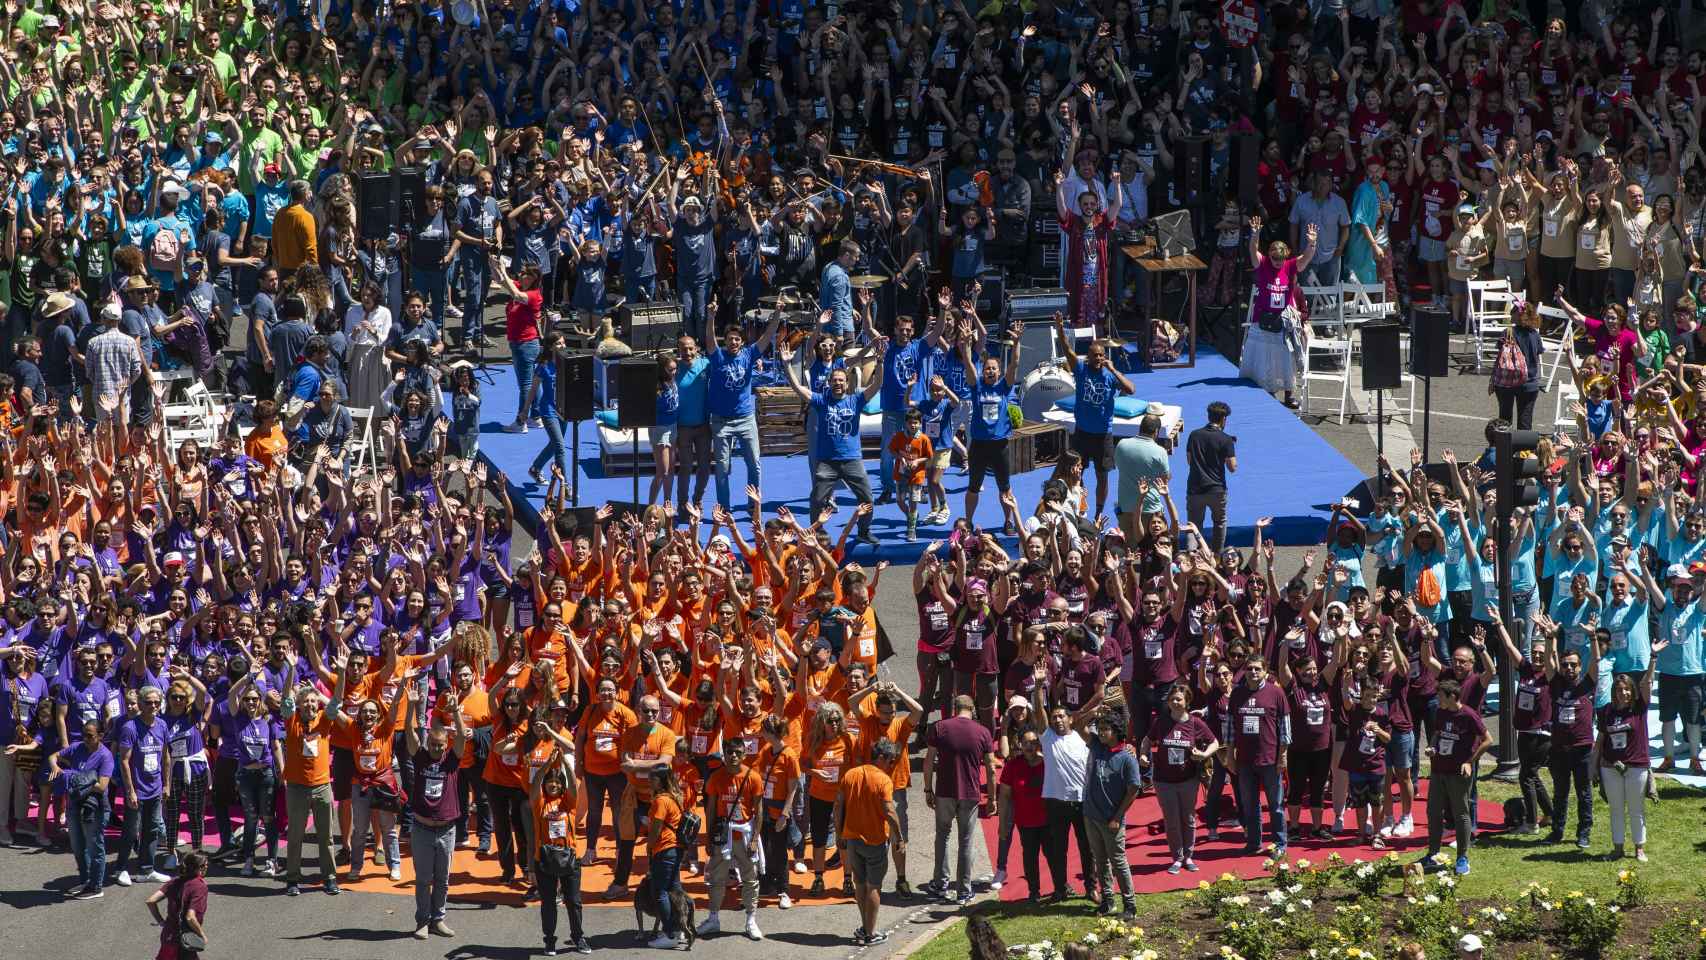 Más de 4.000 personas asistieron al 'hackaton' en la plaza Cibeles/Neptuno en mayo de 2019 organizado por Los18.org.